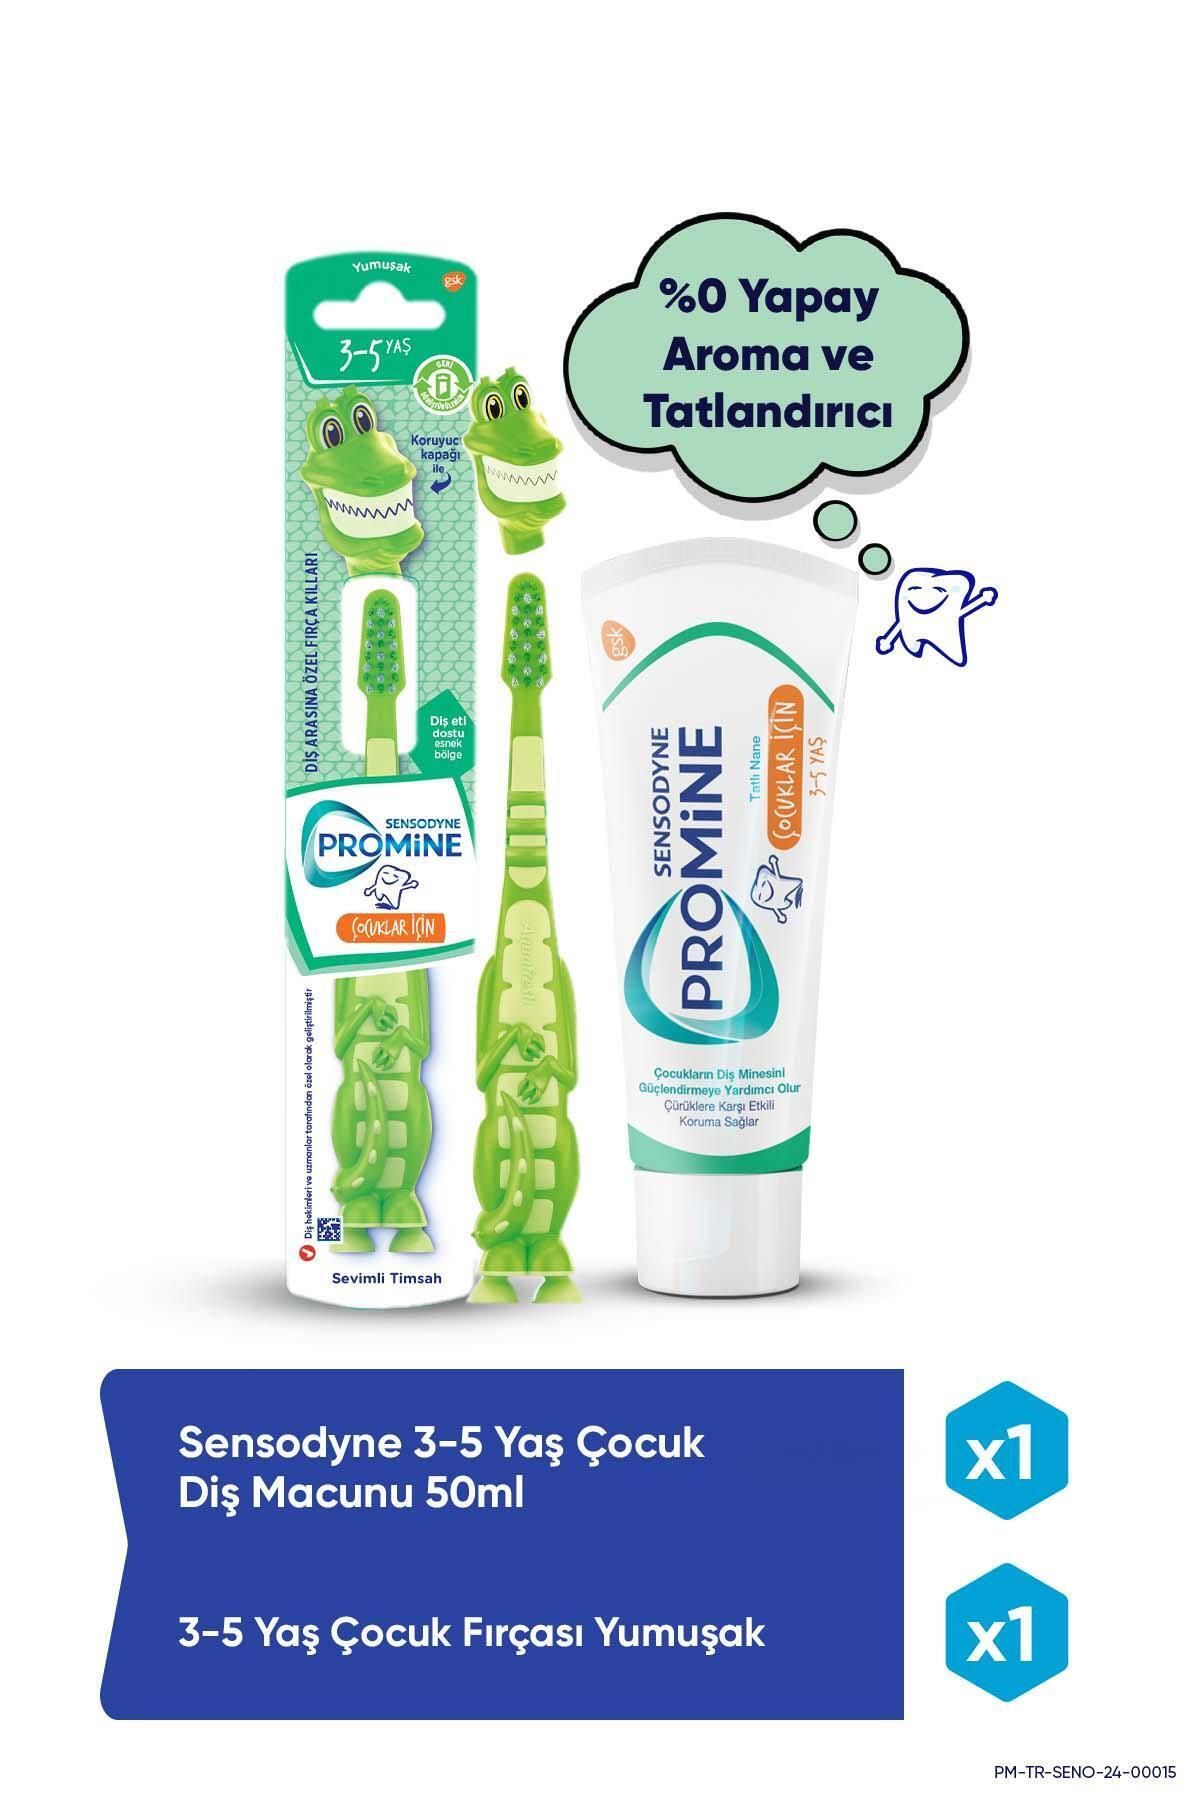 Sensodyne Promine 3-5 Yaş Çürüklere Karşı Koruyan Çocuk Diş Macunu 50ml+Timsahlı Yumuşak Diş Fırçası